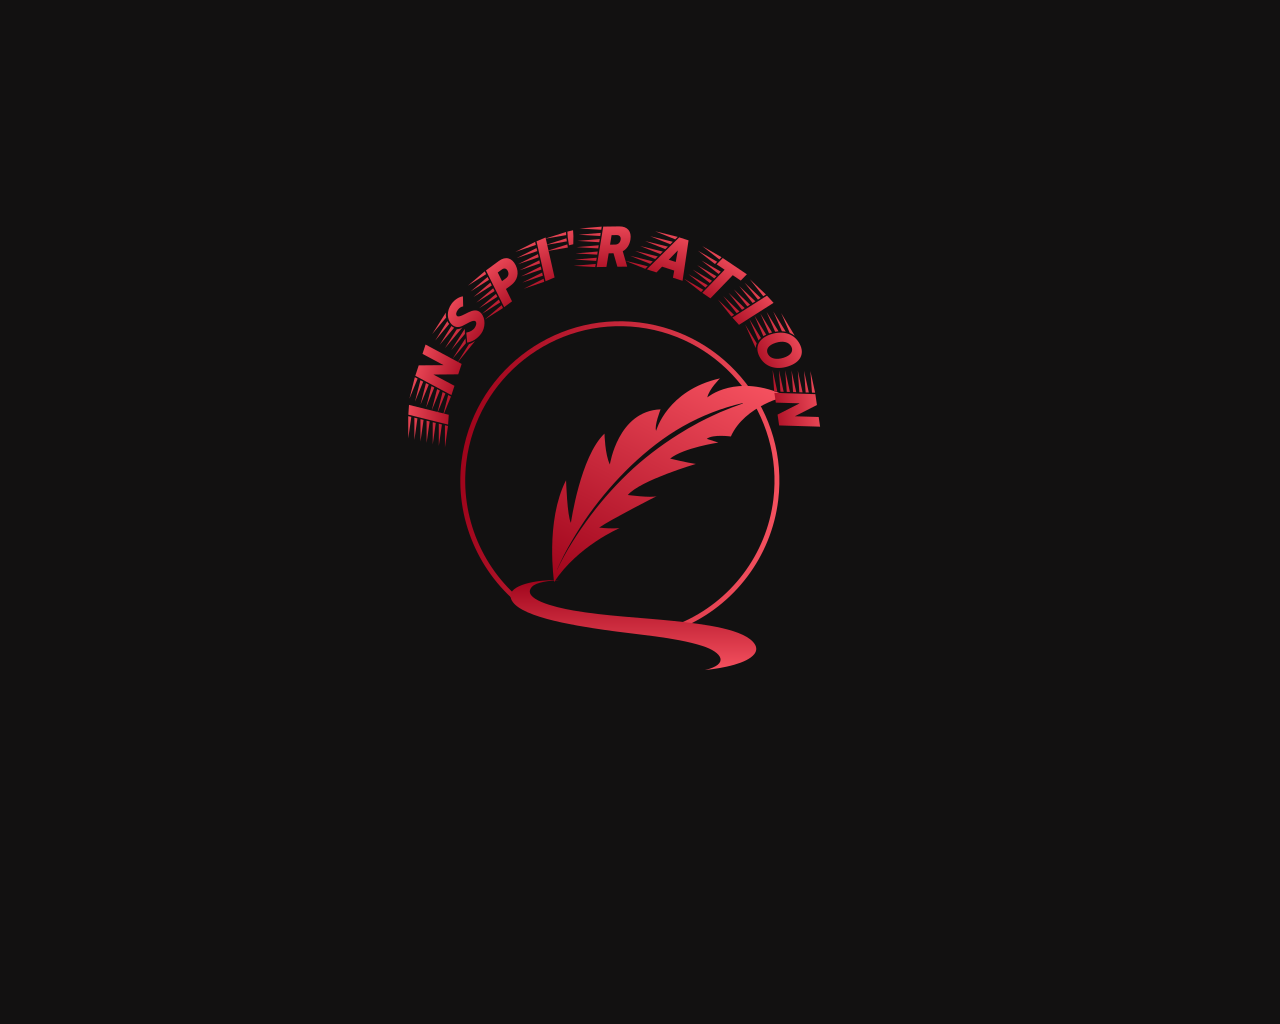 Inspi'Ration's logo